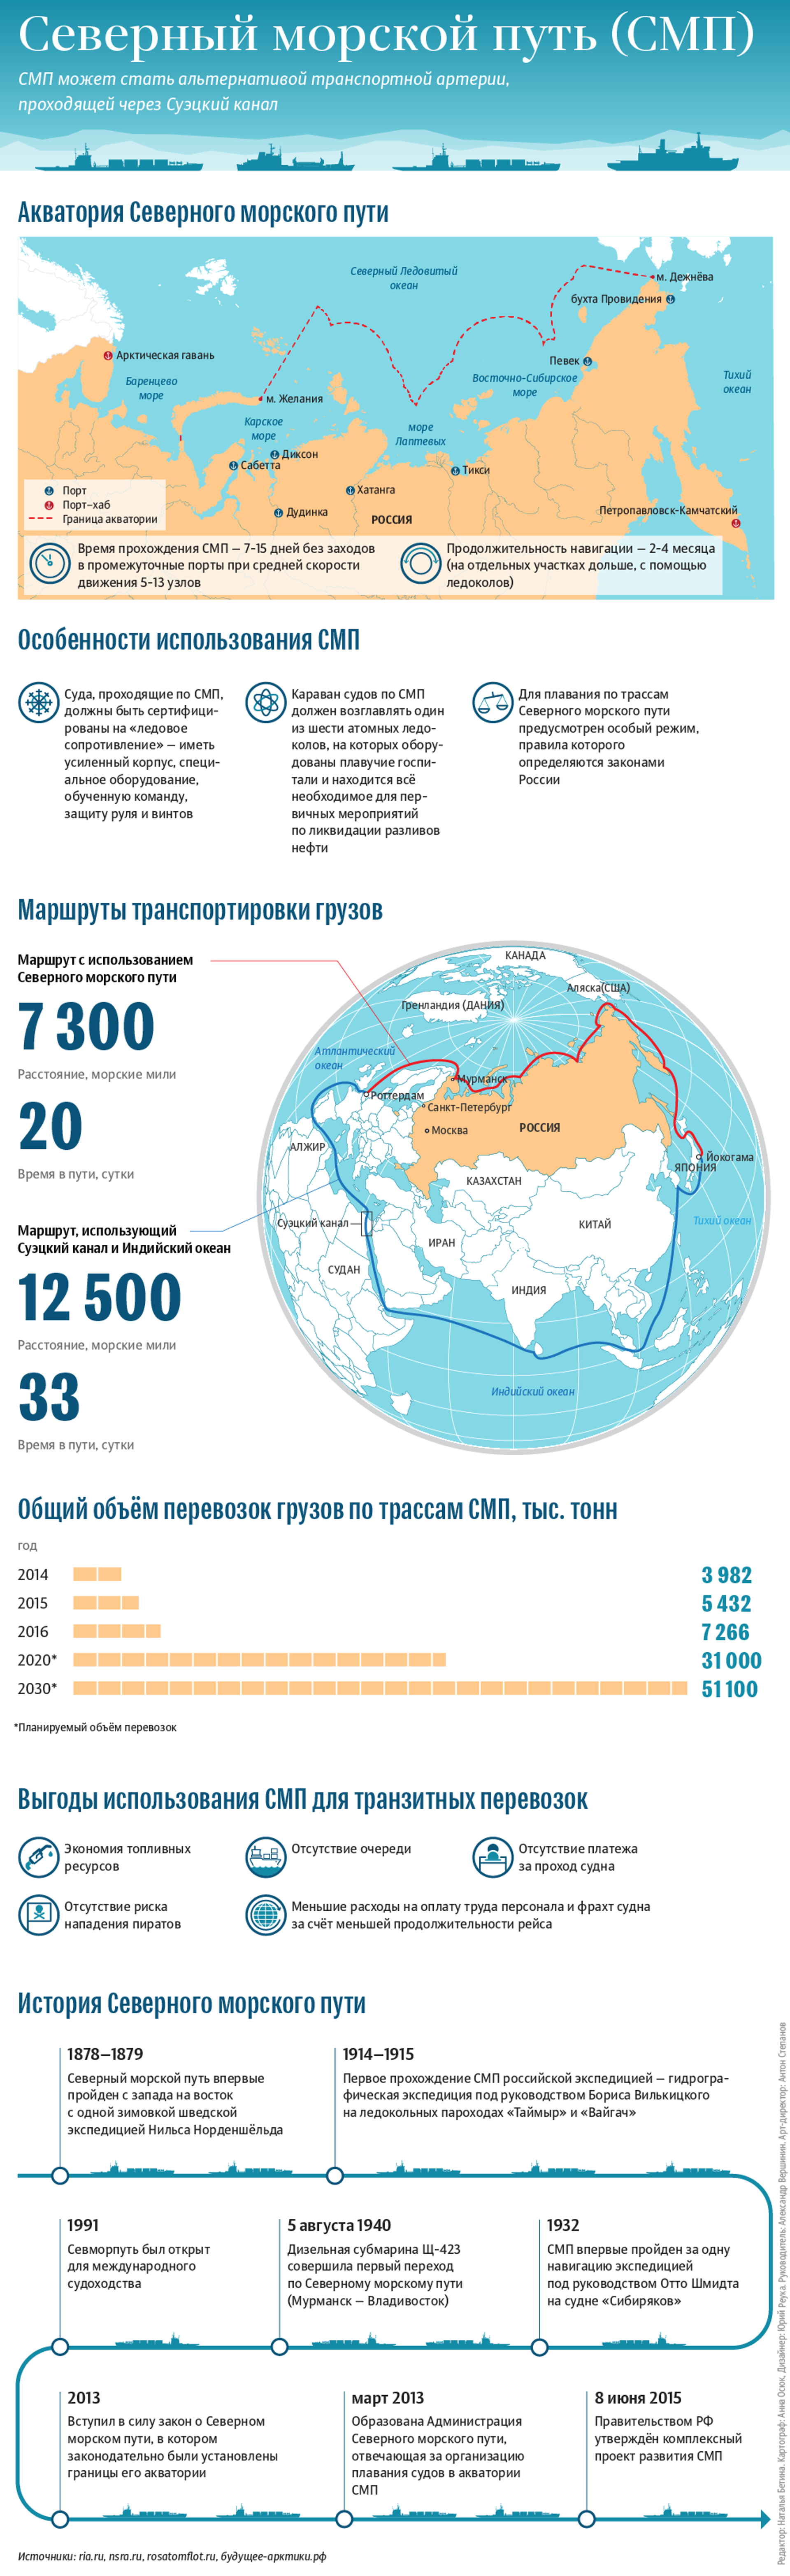 Новая программа развития Арктики утверждена правительством России - Sputnik Молдова, 1920, 03.04.2021